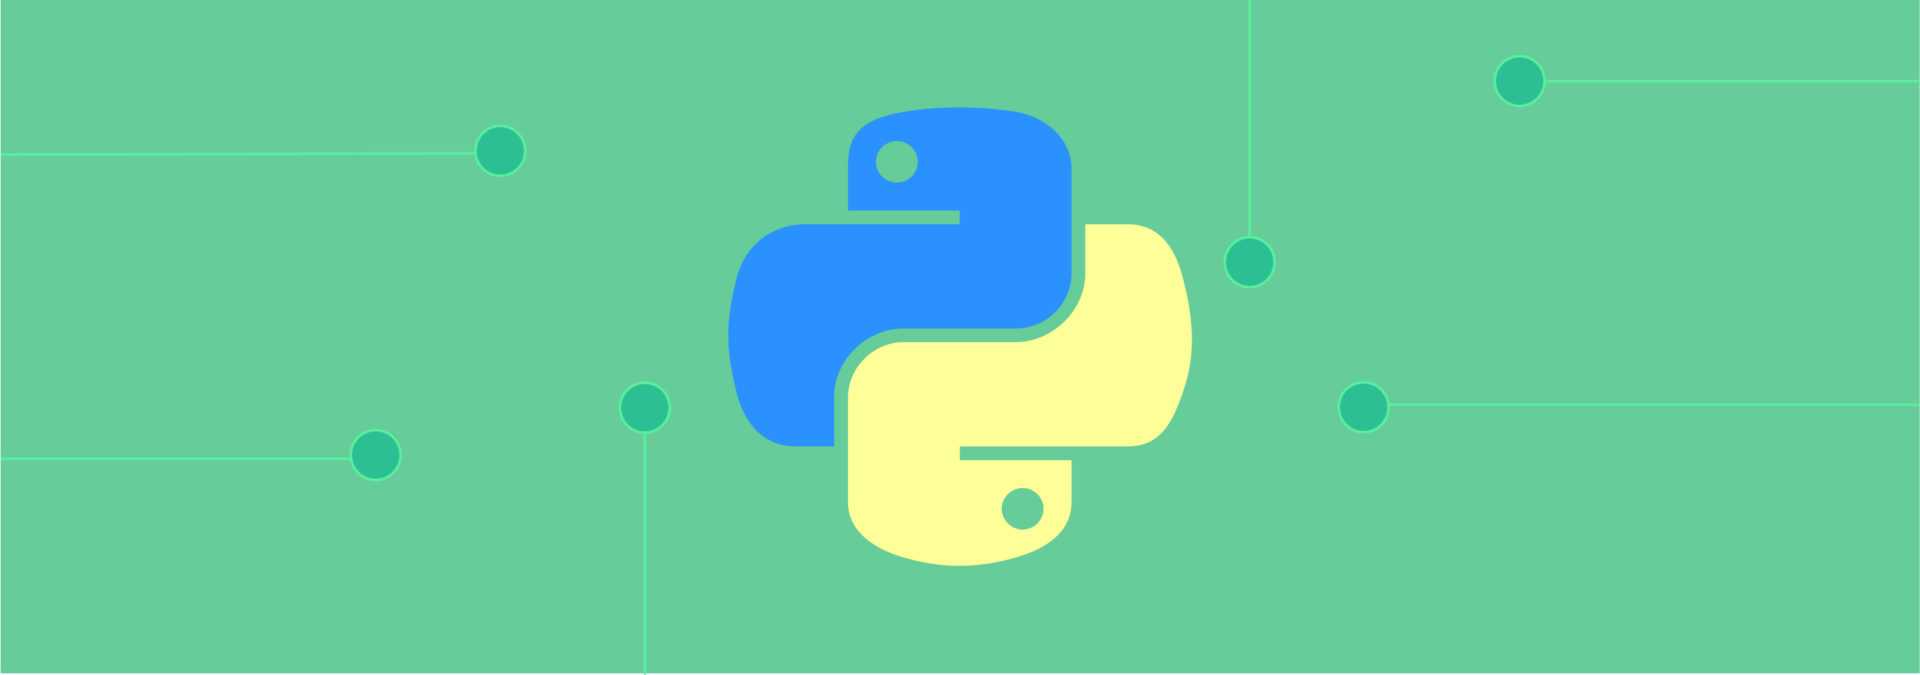 Многопроцессорность в python: параллельная обработка с помощью модуля multiprocessing и примеры